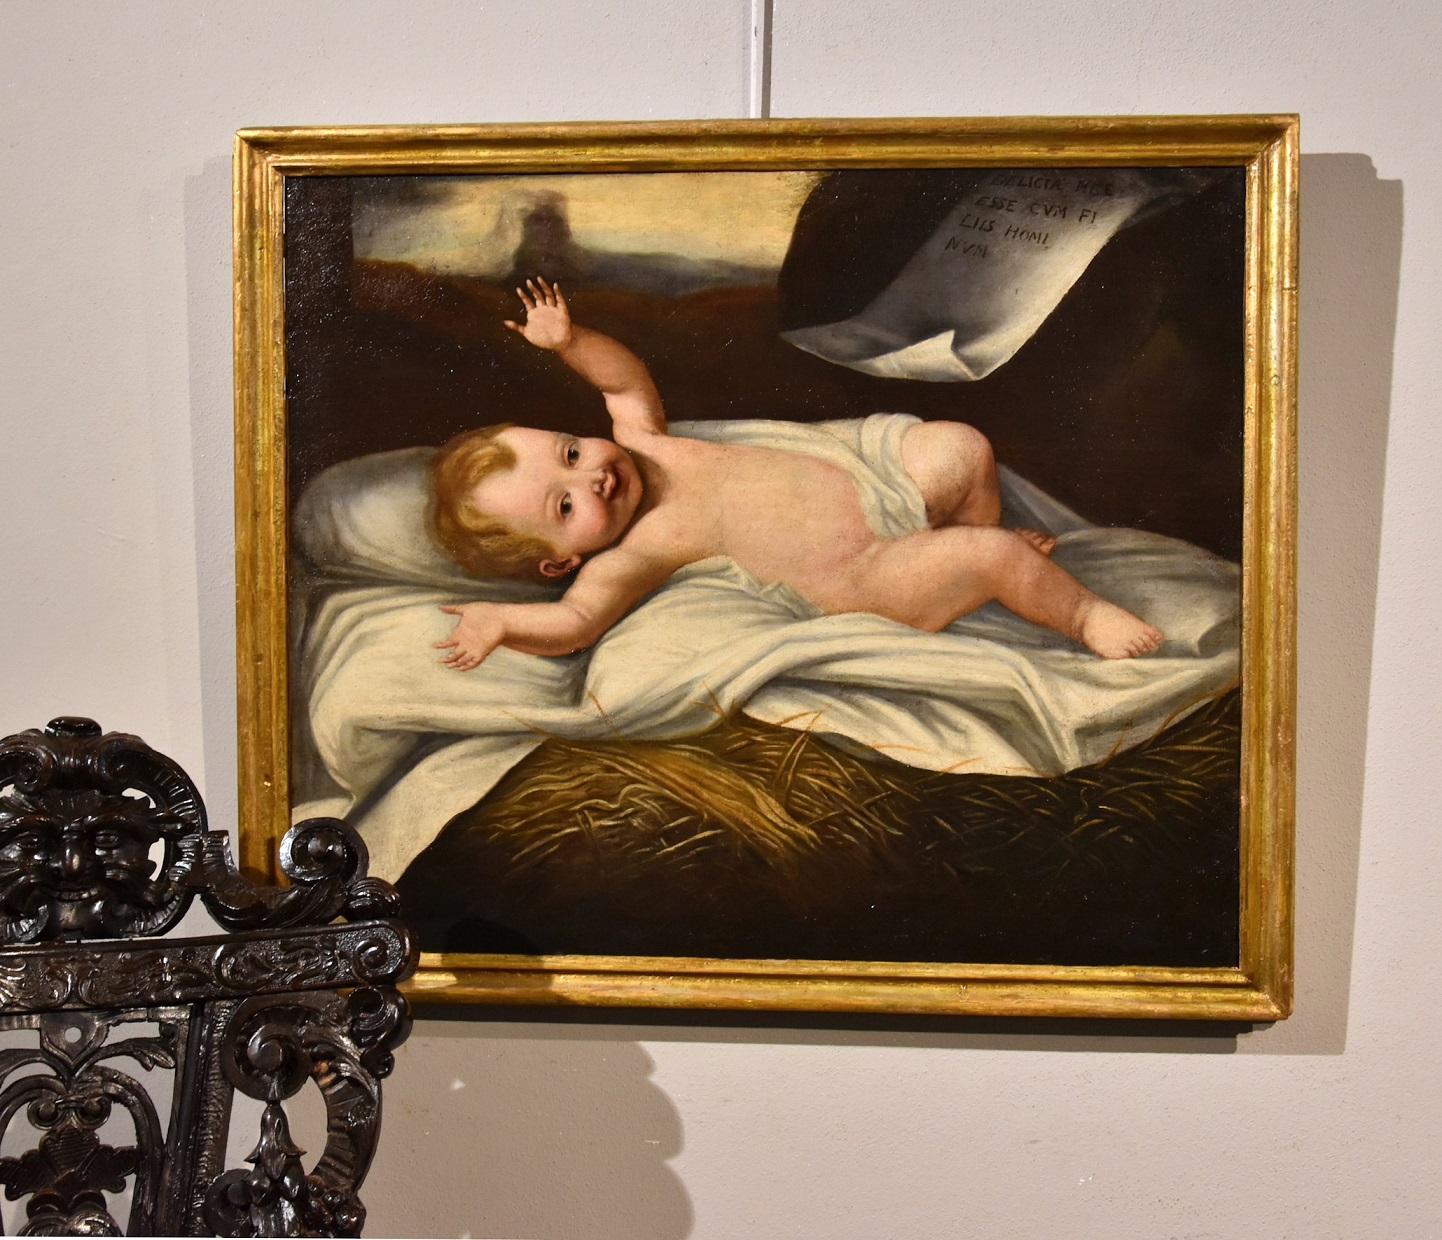 Child Jesus - Peinture à l'huile sur toile - Grand maître - Bébé italien du 17ème siècle - religieux  - Painting de Lombard painter active in the 17th century